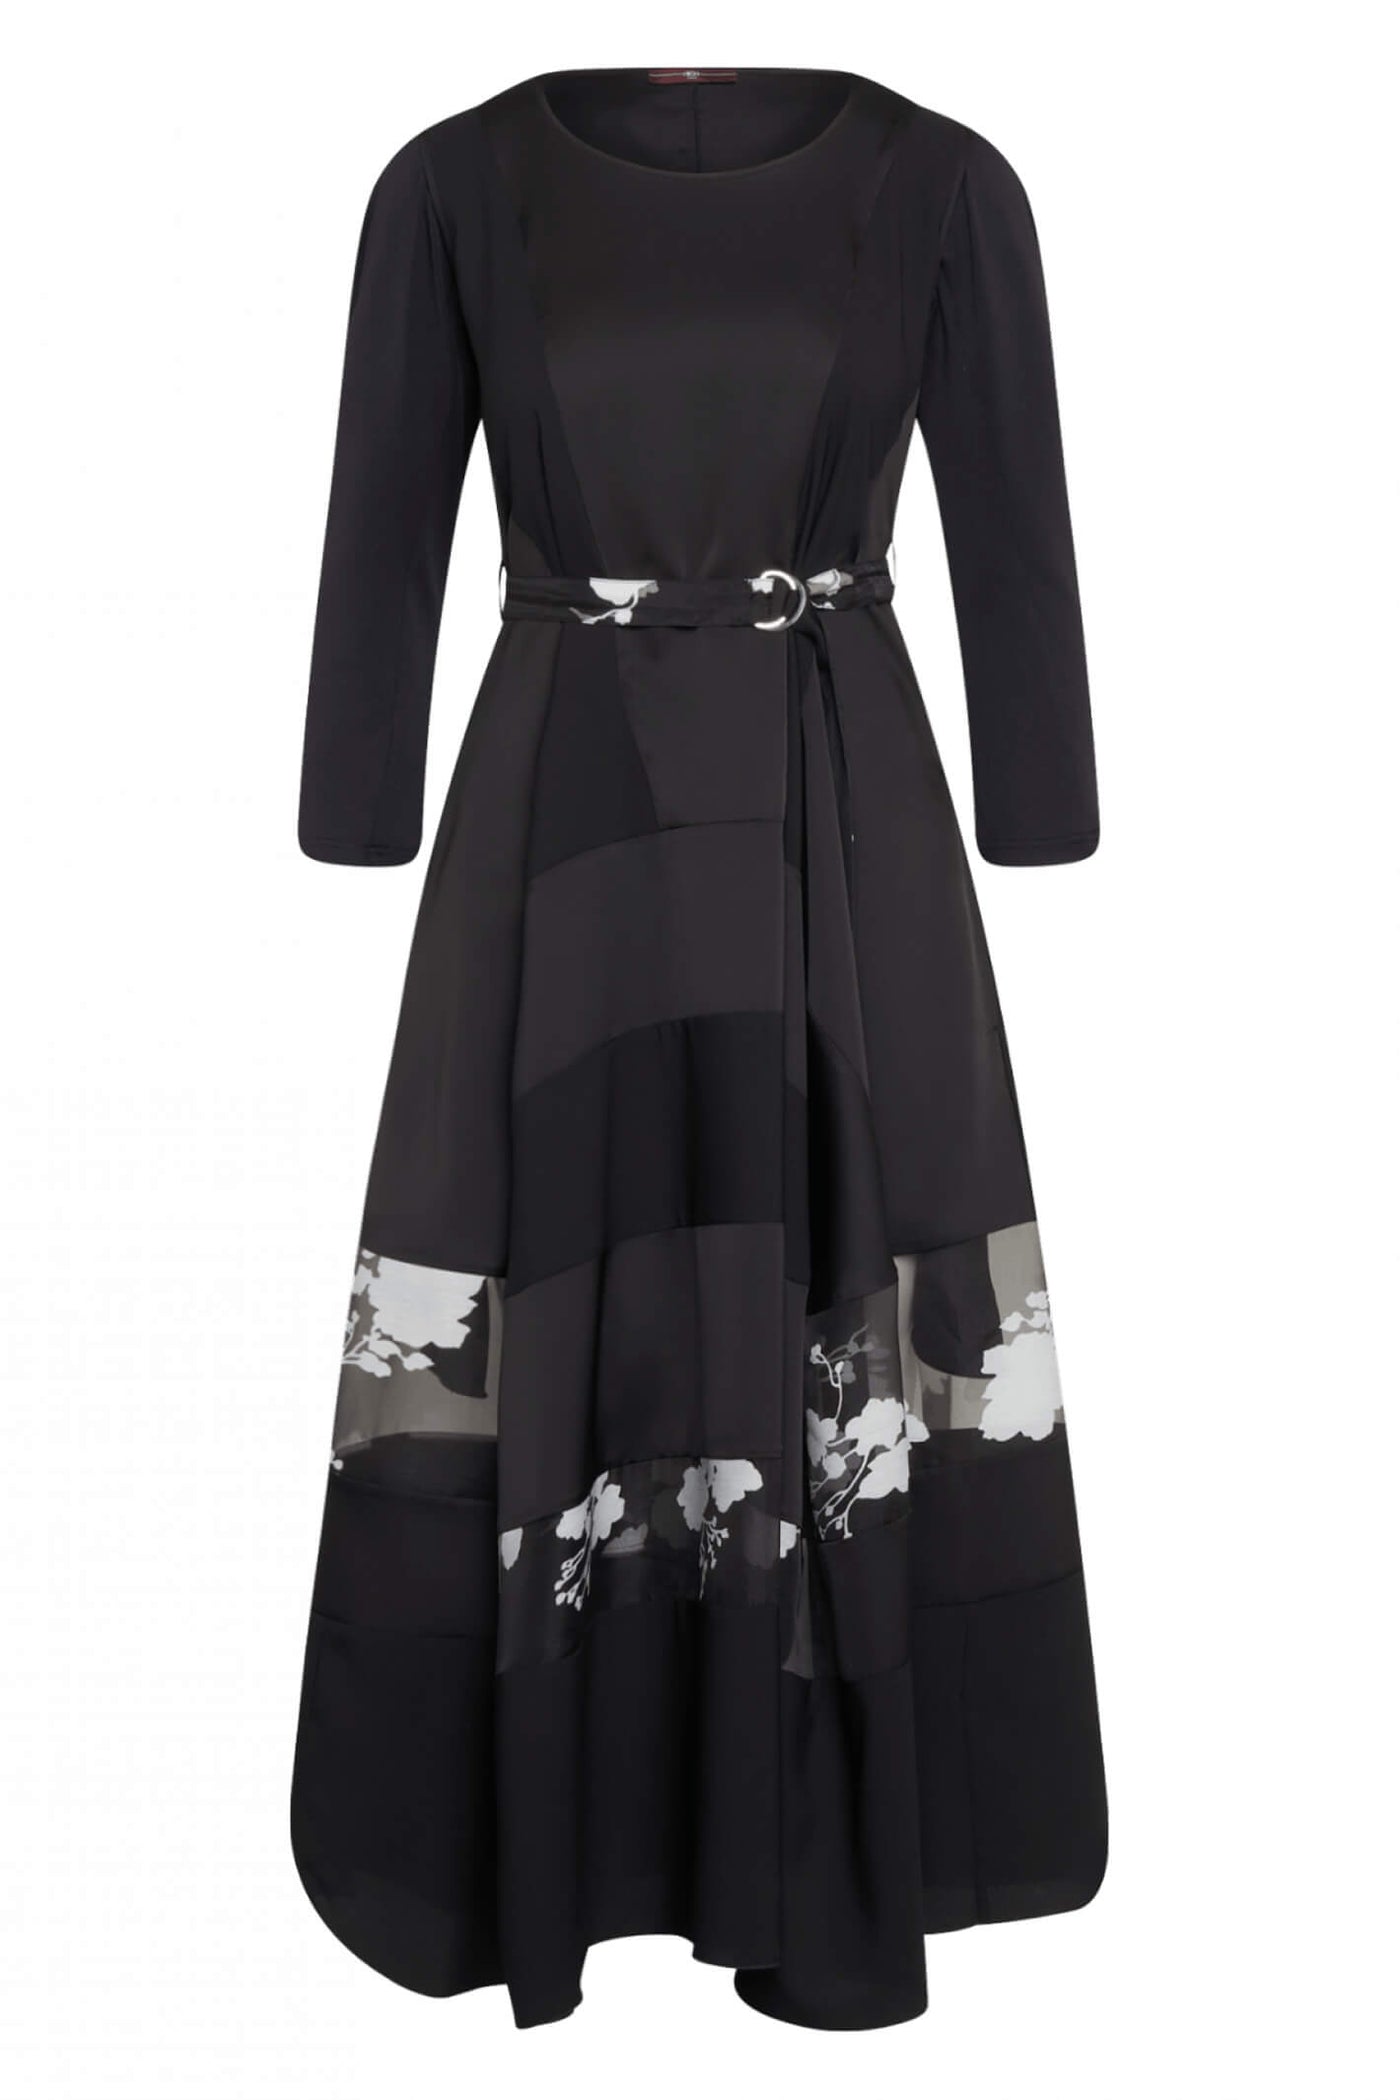 High S21665 Black Reimagine Dress - Lonah Boutique